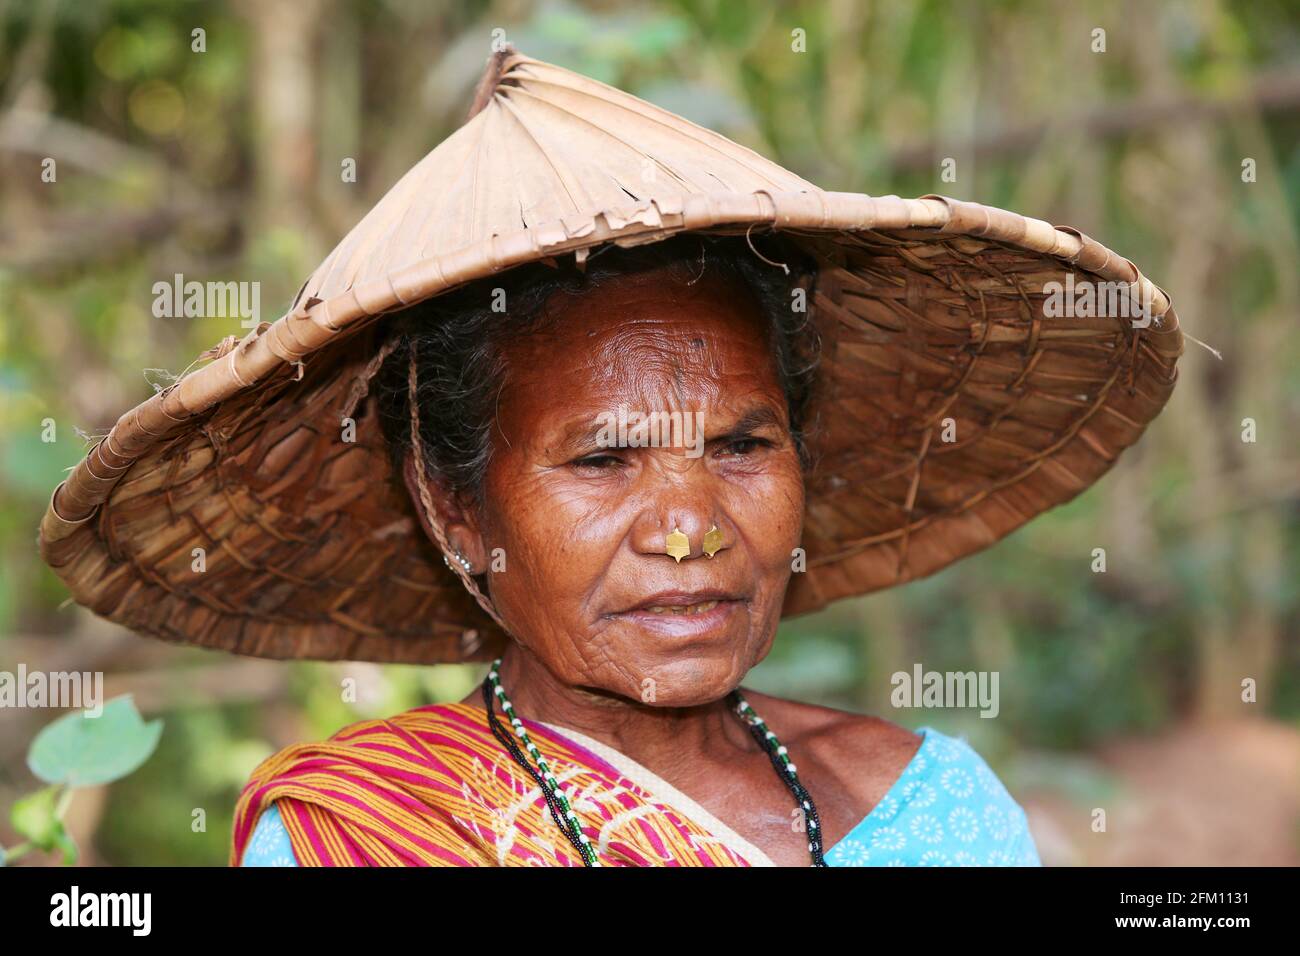 Tribal woman wearing coolie hat at Jakkaraguda Village in Srikakulam District, Andhra Pradesh, India. SAVARA TRIBE Stock Photo